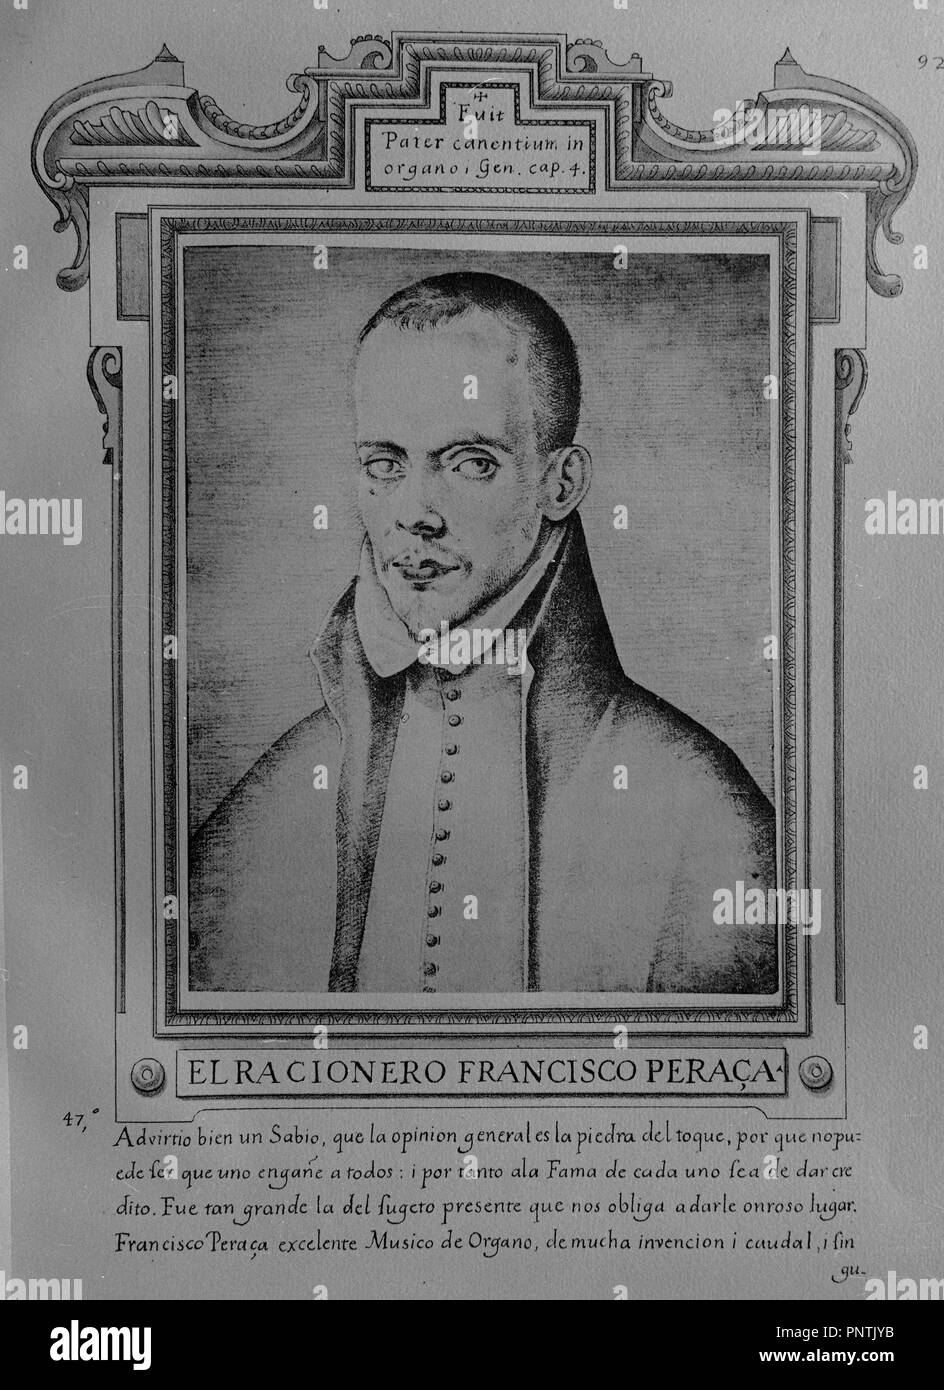 FRANCISCO PERACA - LIBRO DE RETRATOS DE ILUSTRES Y MEMORABLES VARONES - 1599. Author: PACHECO, FRANCISCO. Location: MUSEO LAZARO GALDIANO-COLECCION. MADRID. SPAIN. Stock Photo